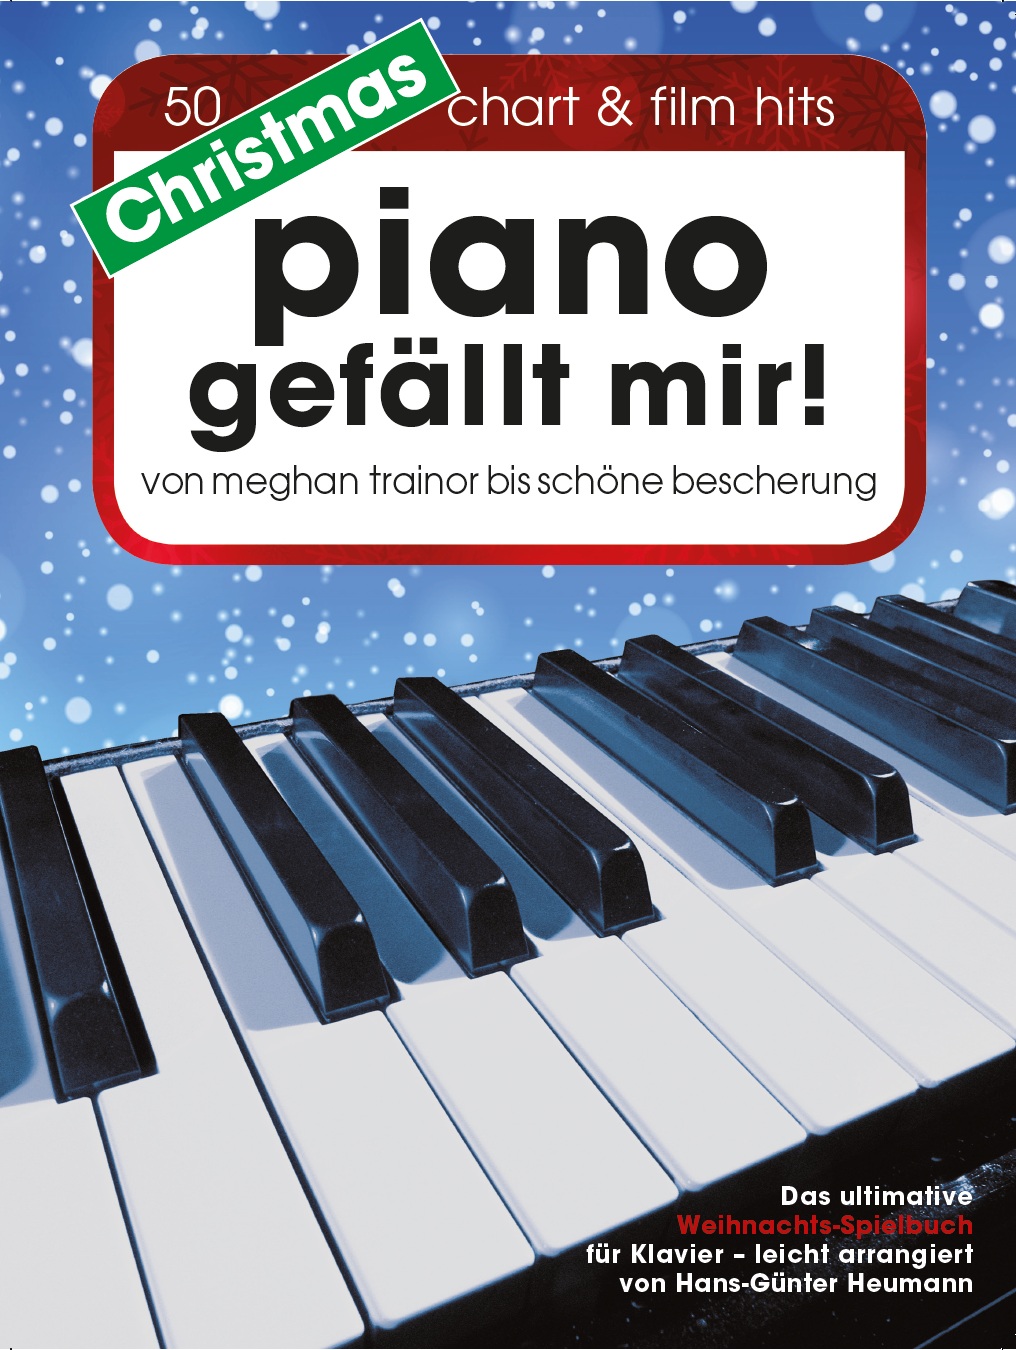 NEU Christmas Piano gefällt mir! Hans-Günter Heumann 438805 - Bild 1 von 1